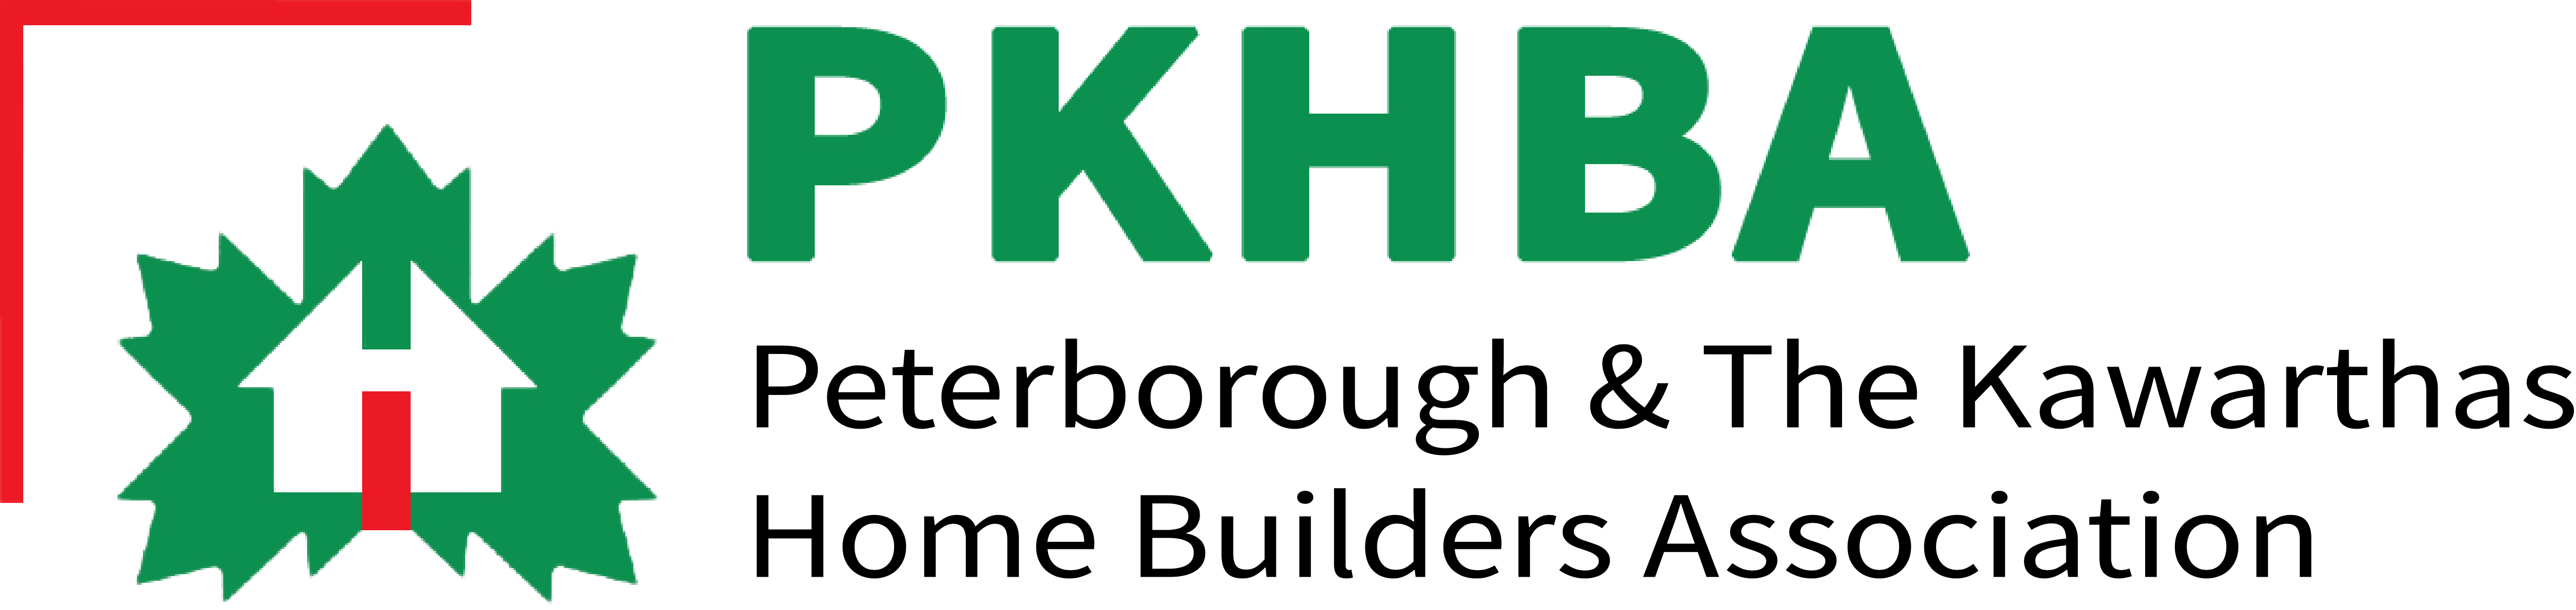 PKHBA Logo | Floortrends